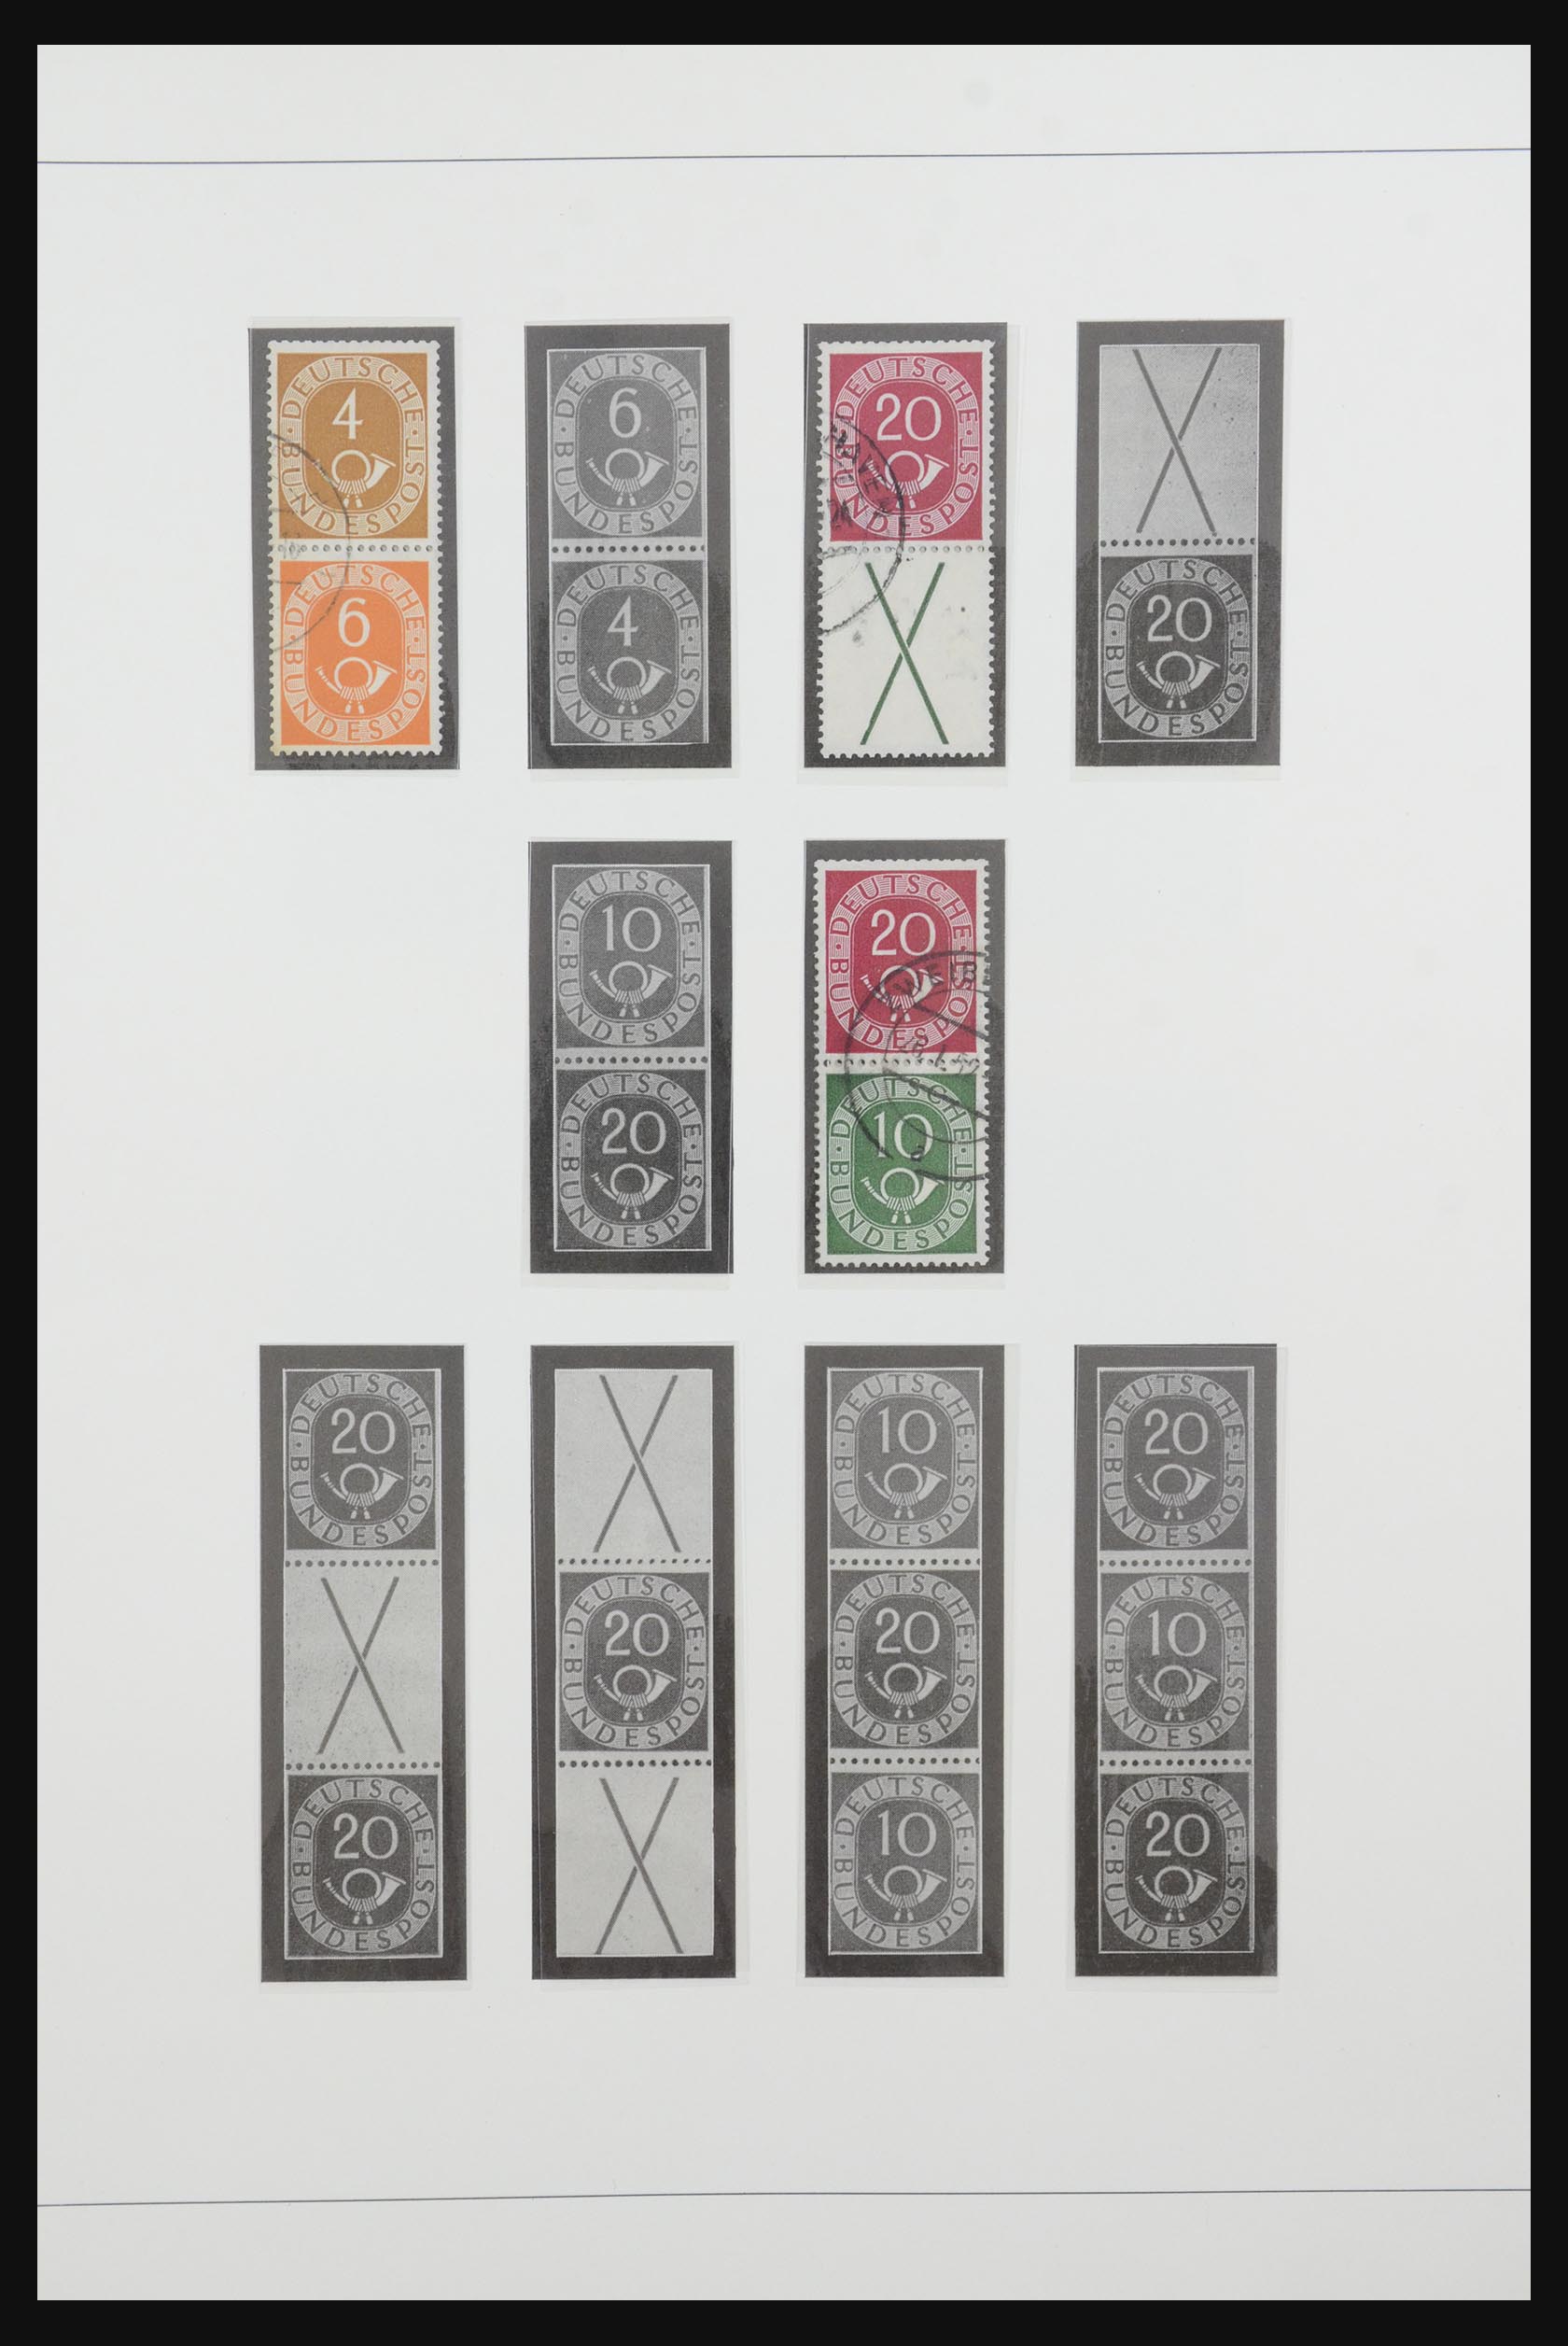 31842 001 - 31842 Bundespost combinaties 1951-2003.